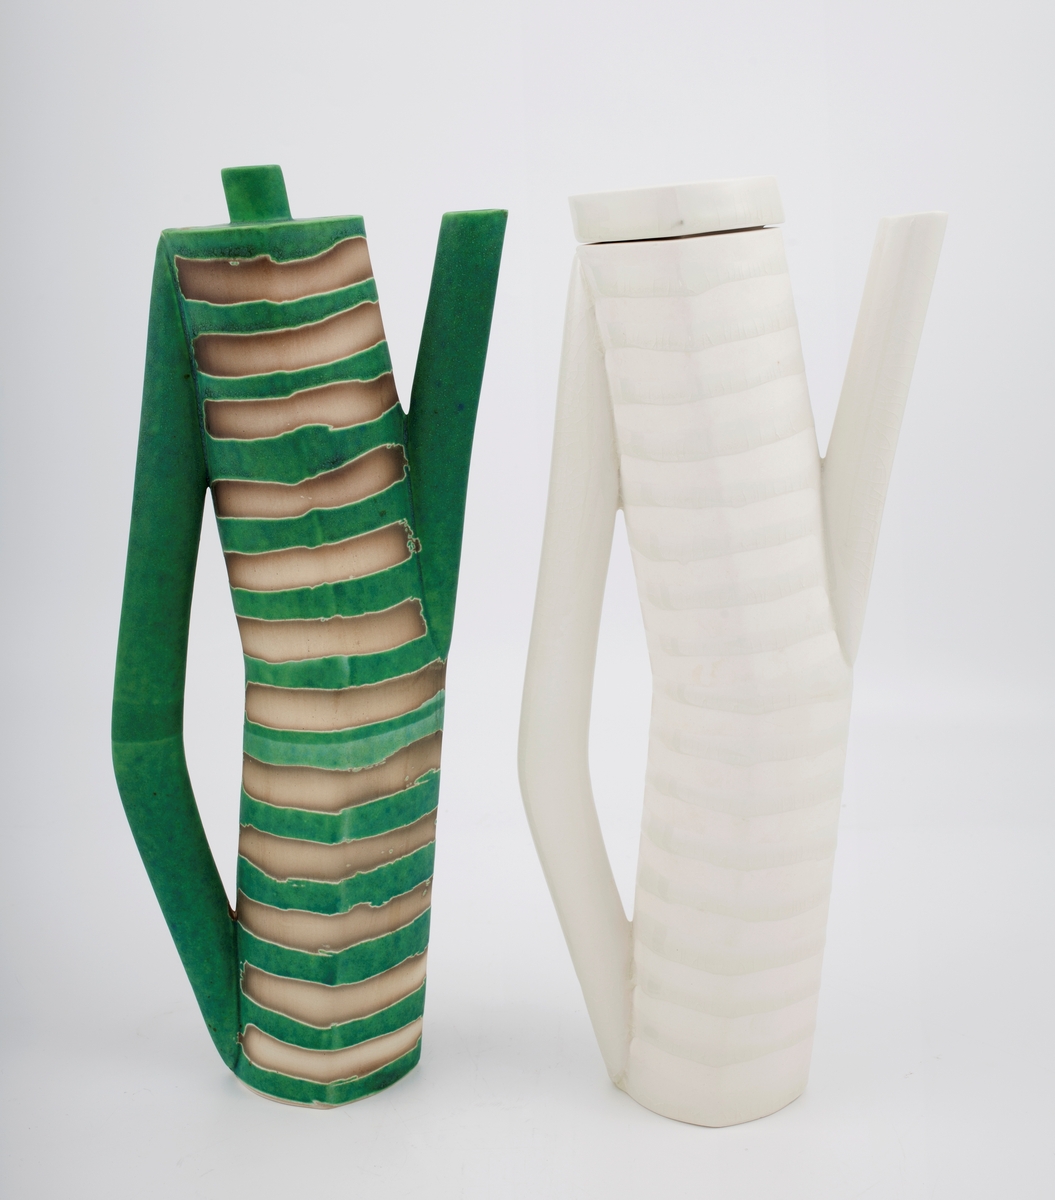 To høye, smale kanner med hank, tut og lokk. Glasert med henholdsvis grønn og hvit glasur på hank, tut, lokk og i horisontalt stripemønster på korpus, vekslende med uglaserte striper.